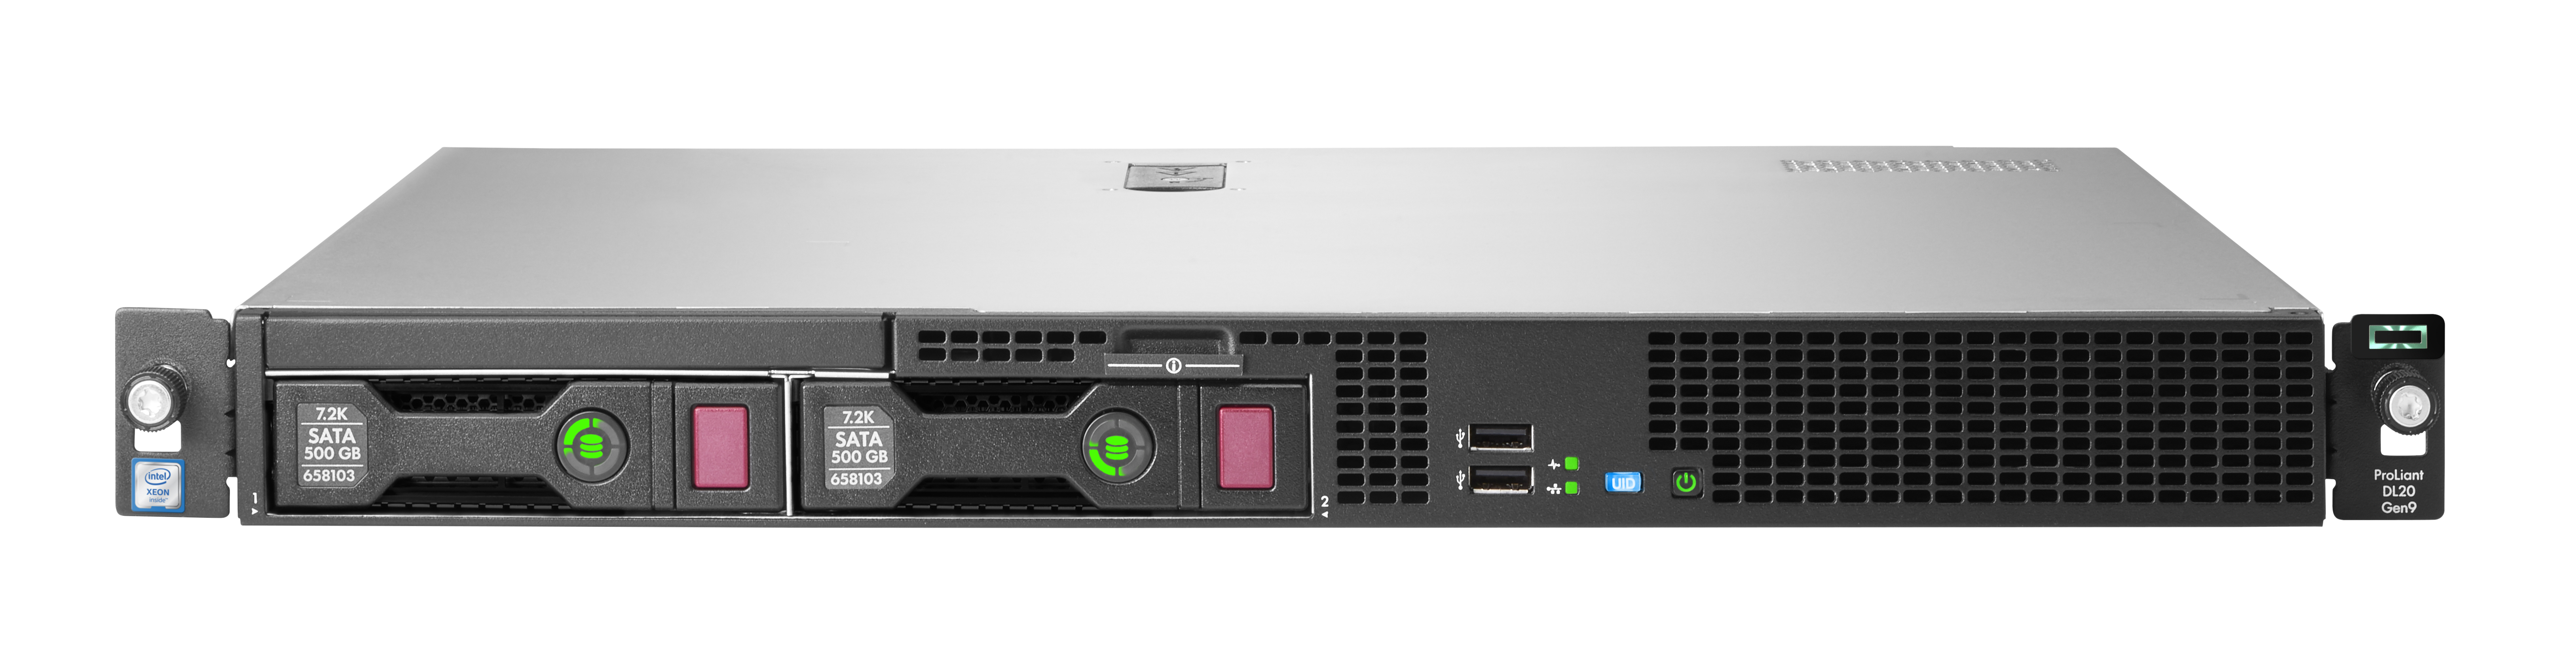 HP (HPE) ProLiant DL20 Gen9 Server